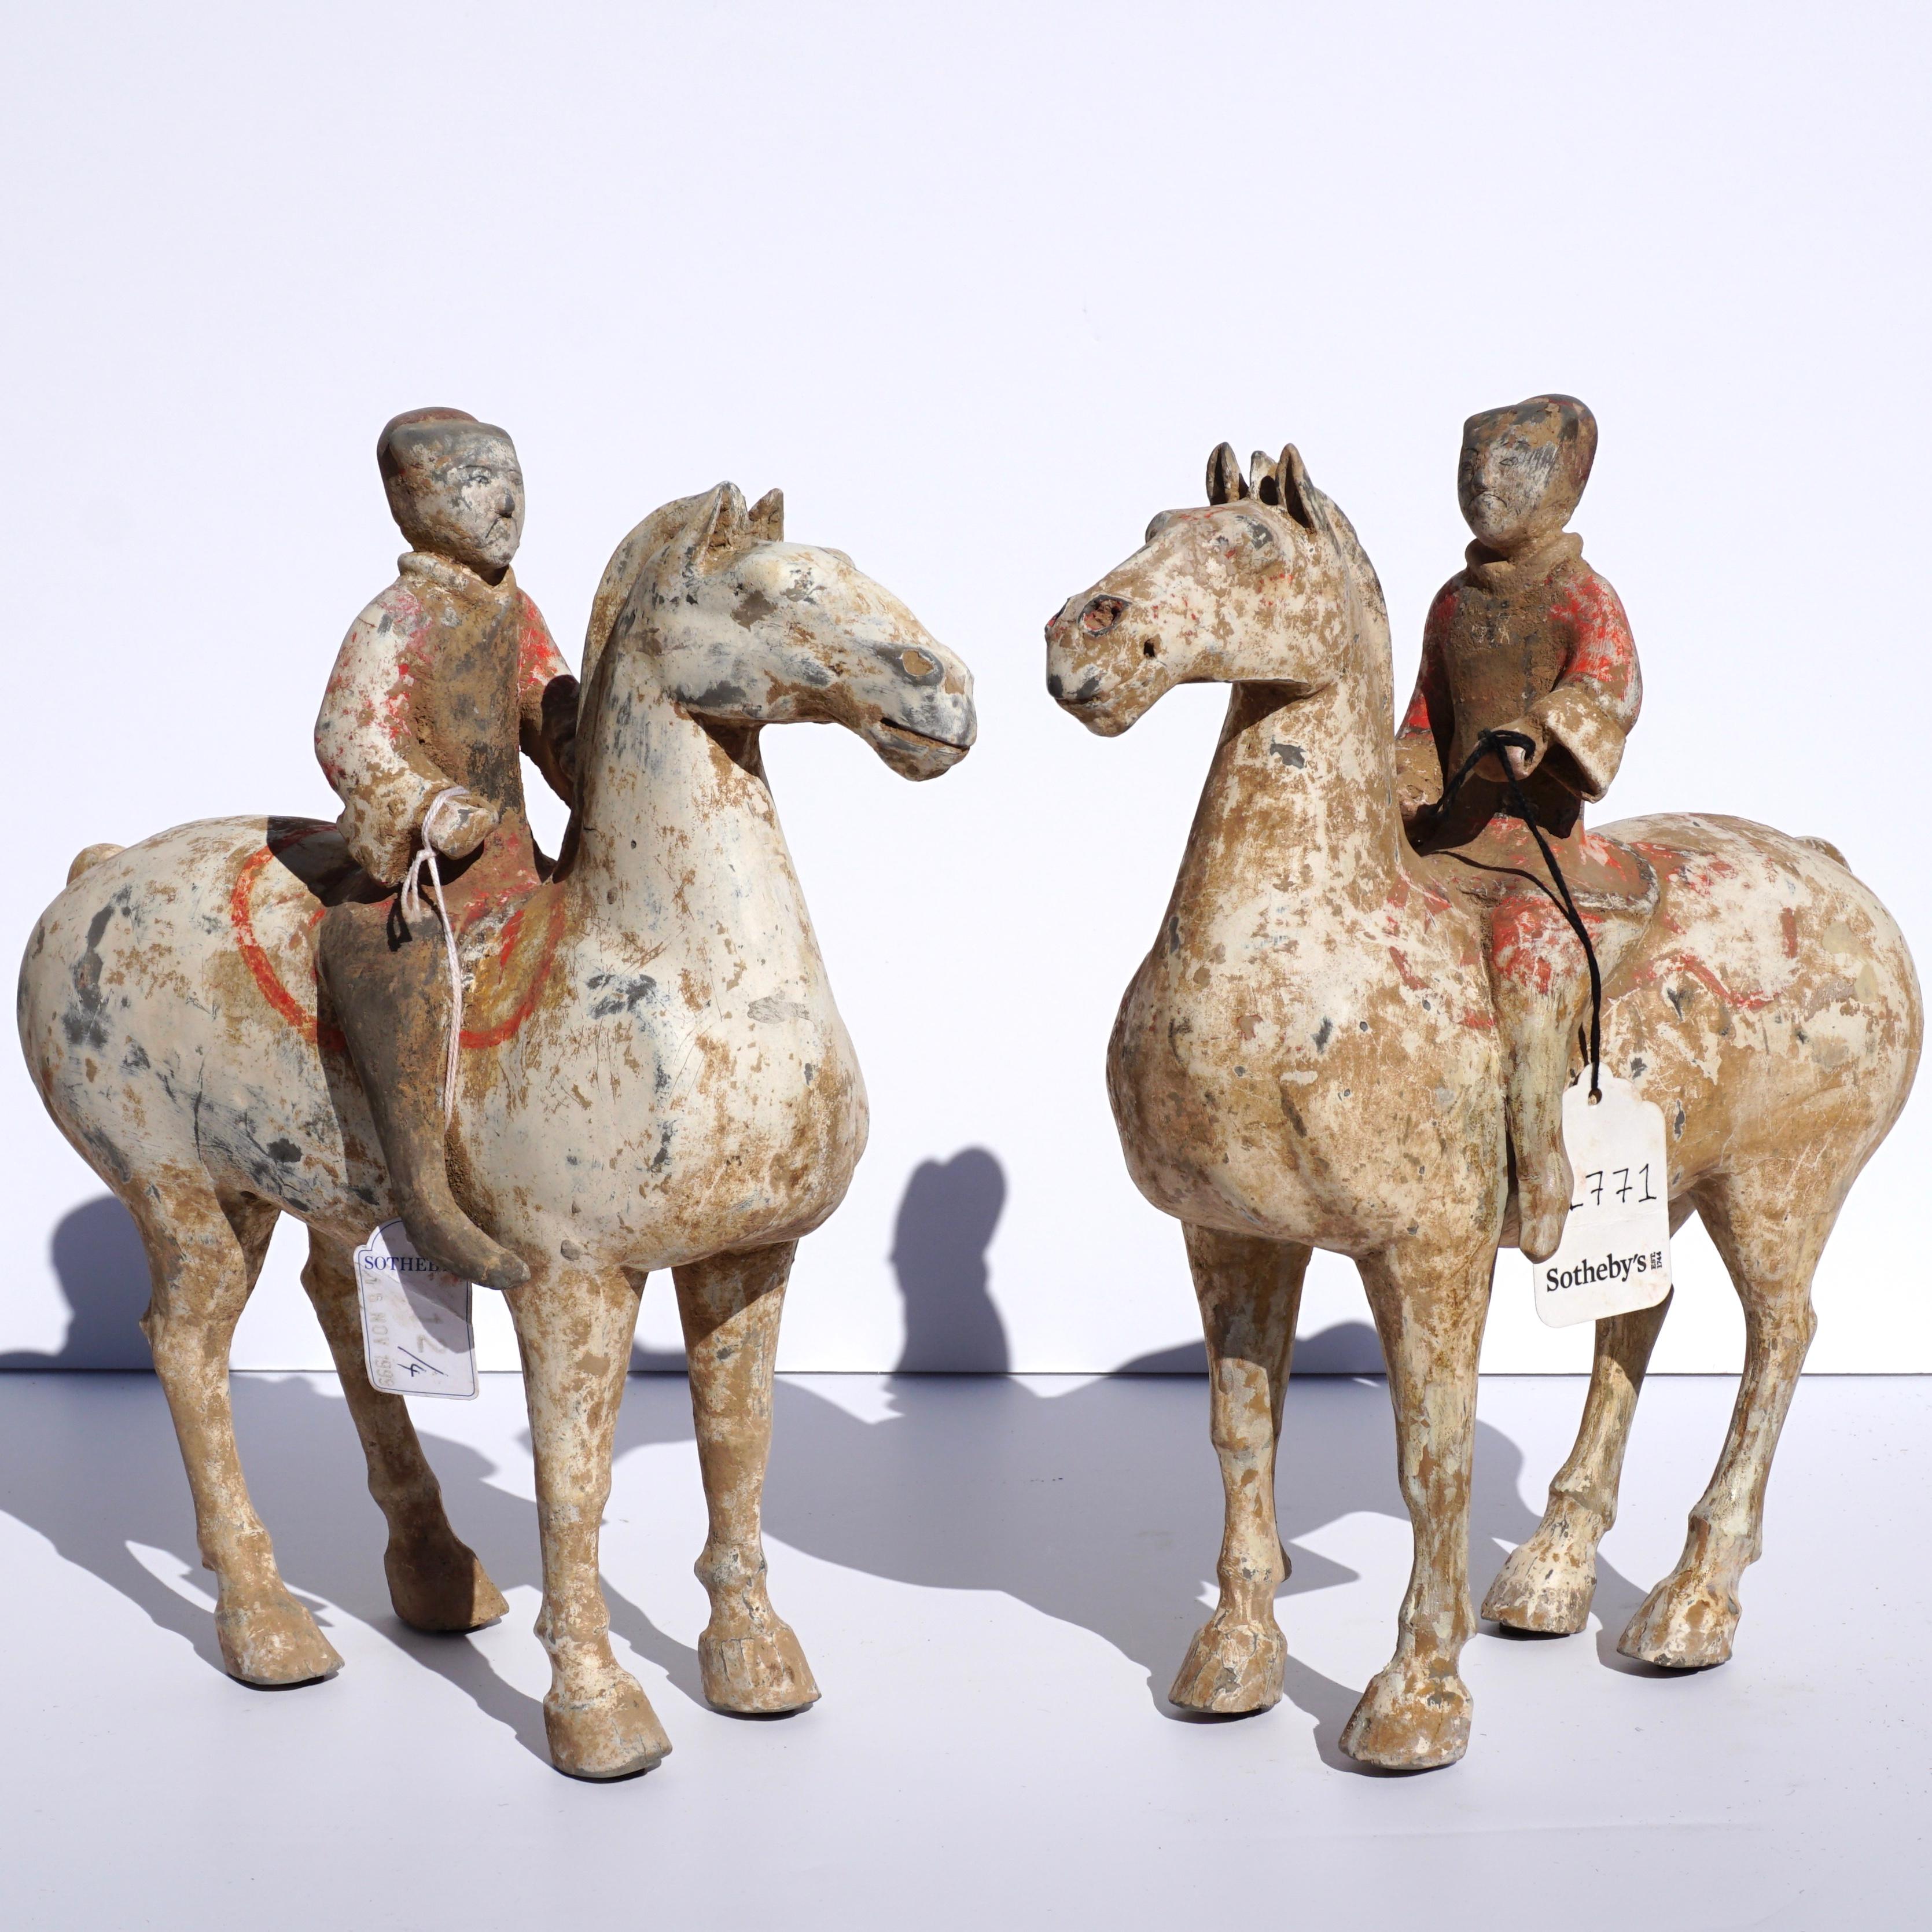 Une merveilleuse paire de chevaux et cavaliers équestres polychromes peints Ex Sotheby's en poterie grise, présente magnifiquement et garantie authentique avec provenance et COA.

Mesures : Hauteur 11,5 pouces et largeur 11 pouces

État :